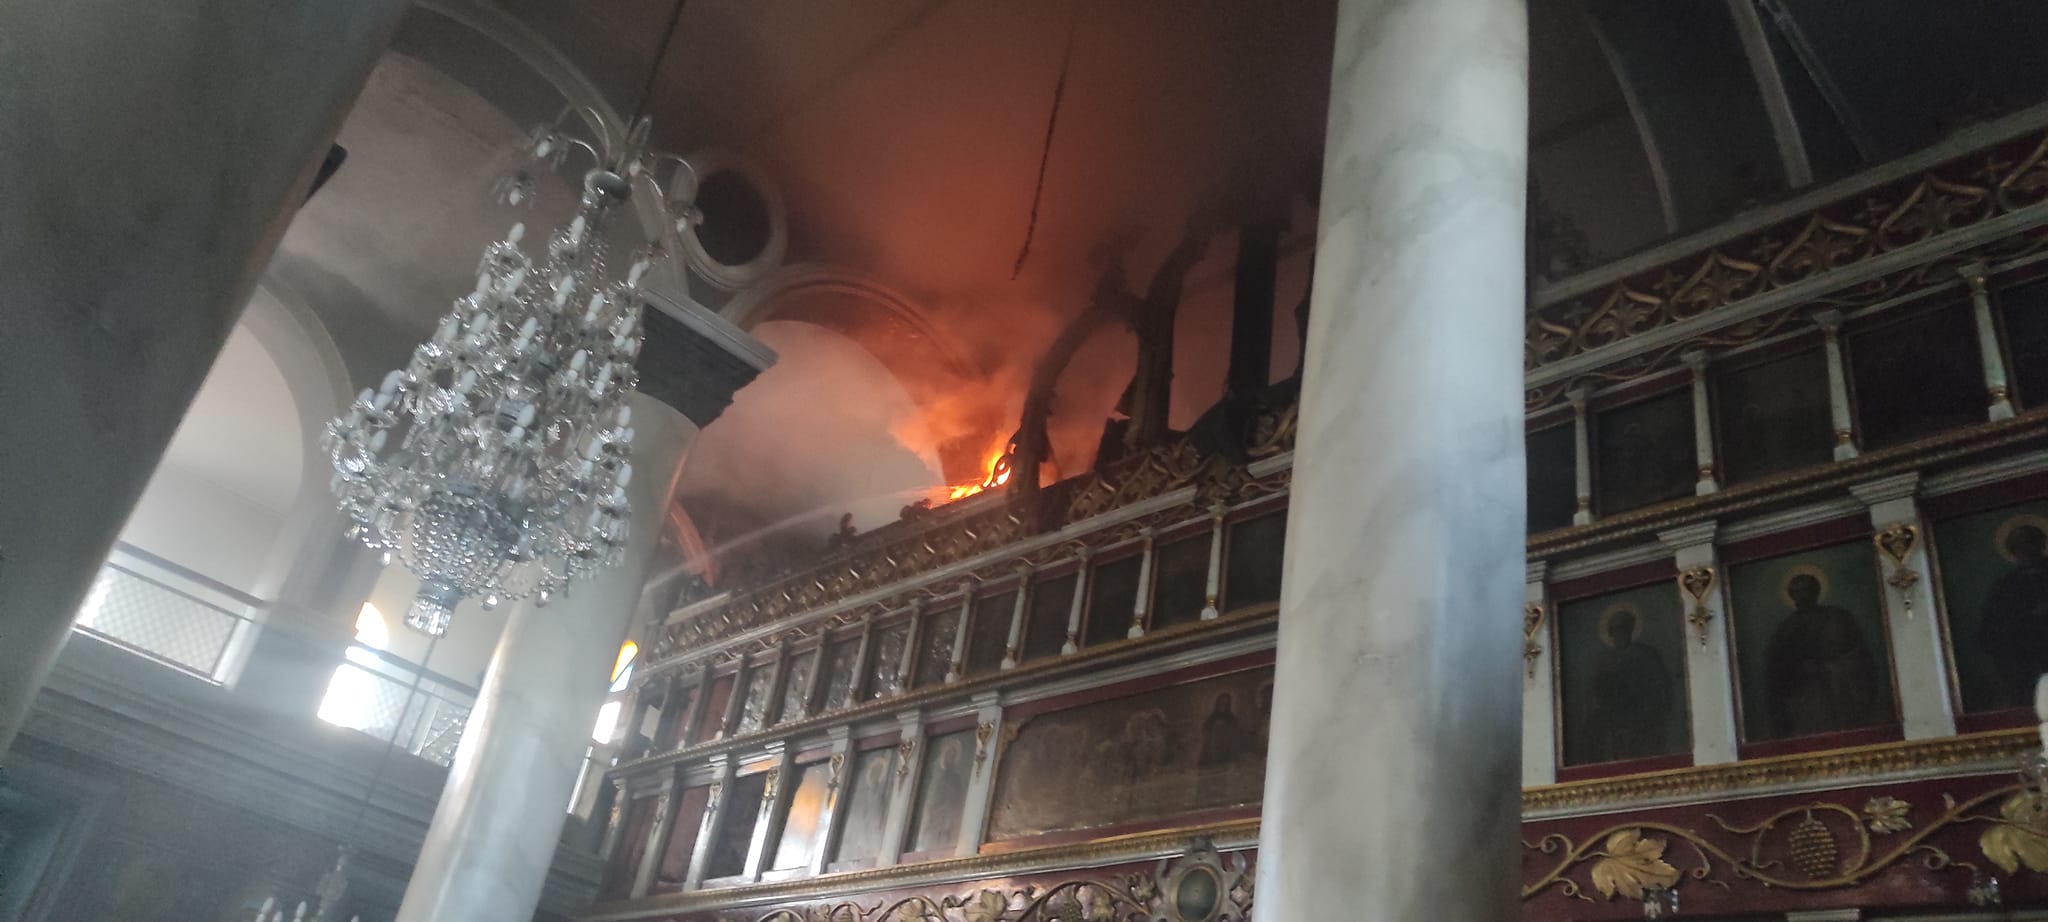 Νιγρίτα: Θλίψη για τις καταστροφές από πυρκαγιά στον Ιερό Ναό του Αγίου Αθανασίου